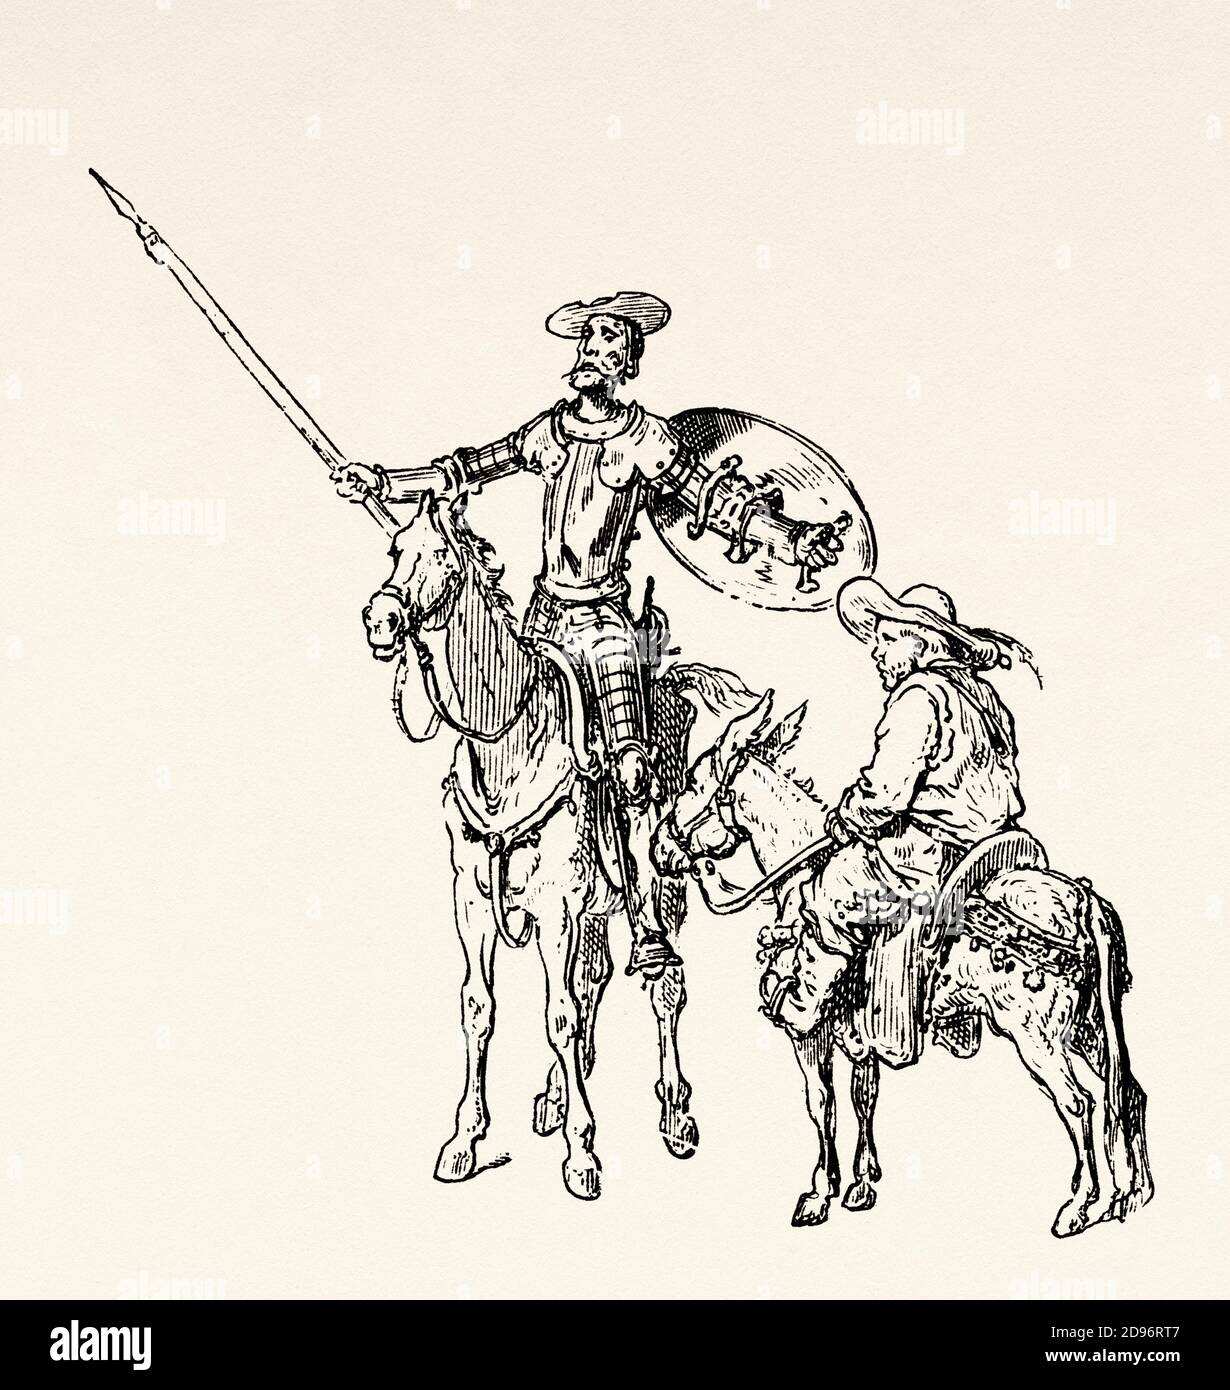 Don Quichotte par Miguel de Cervantes Saavedra. Illustration de la gravure du XIXe siècle par Gustave Dore Banque D'Images